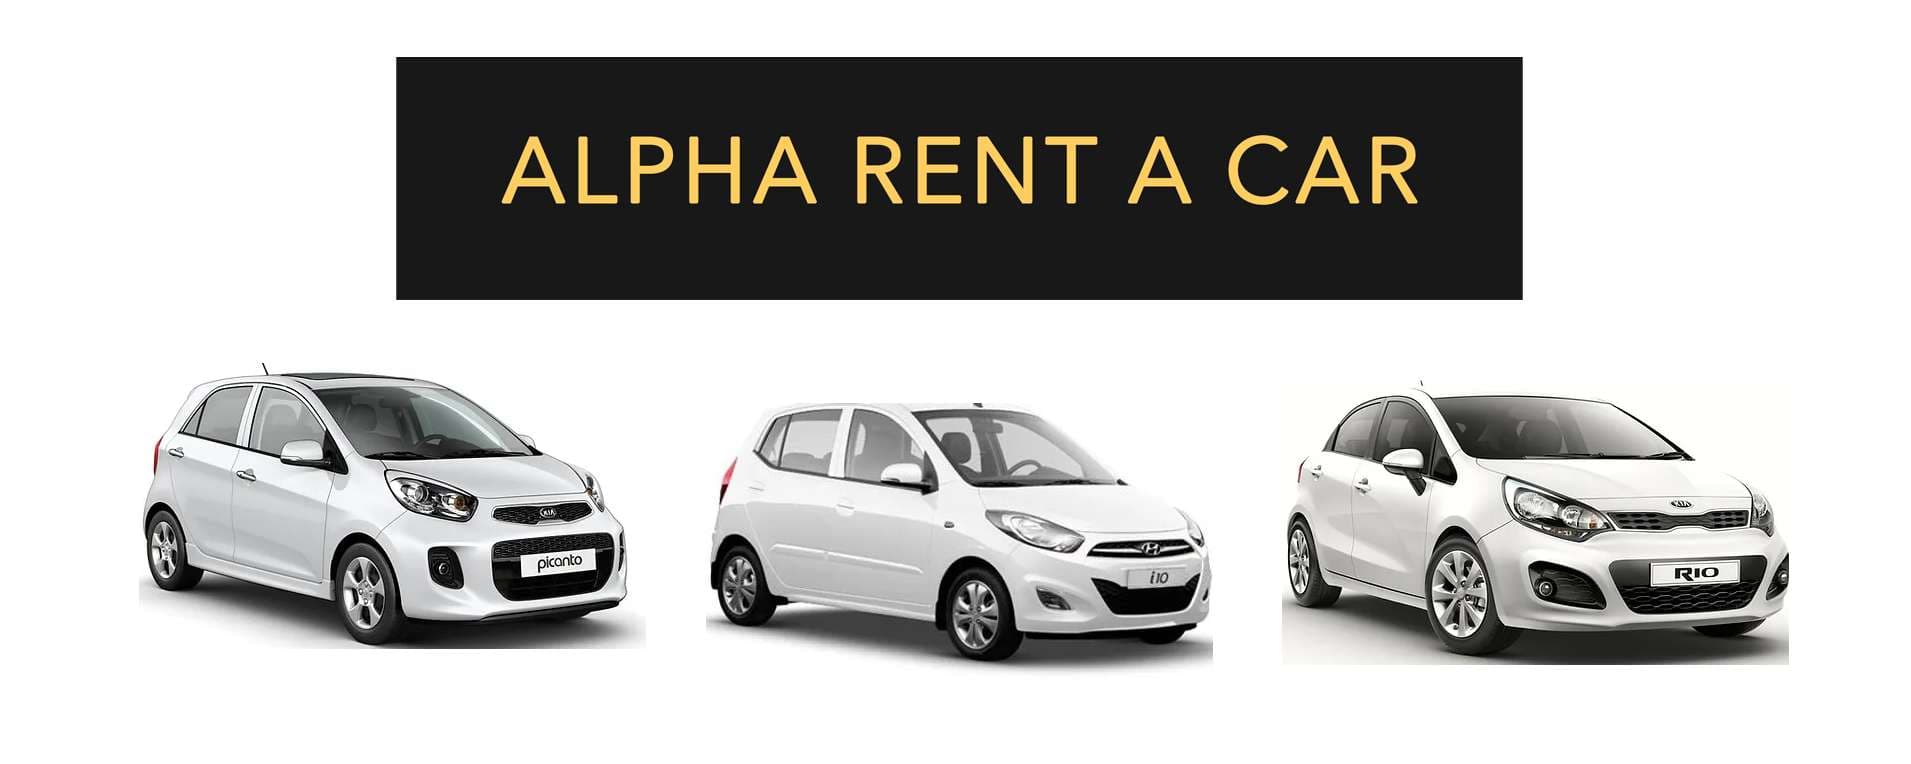 Alpha Rent A Car - Mahe - Seychelles